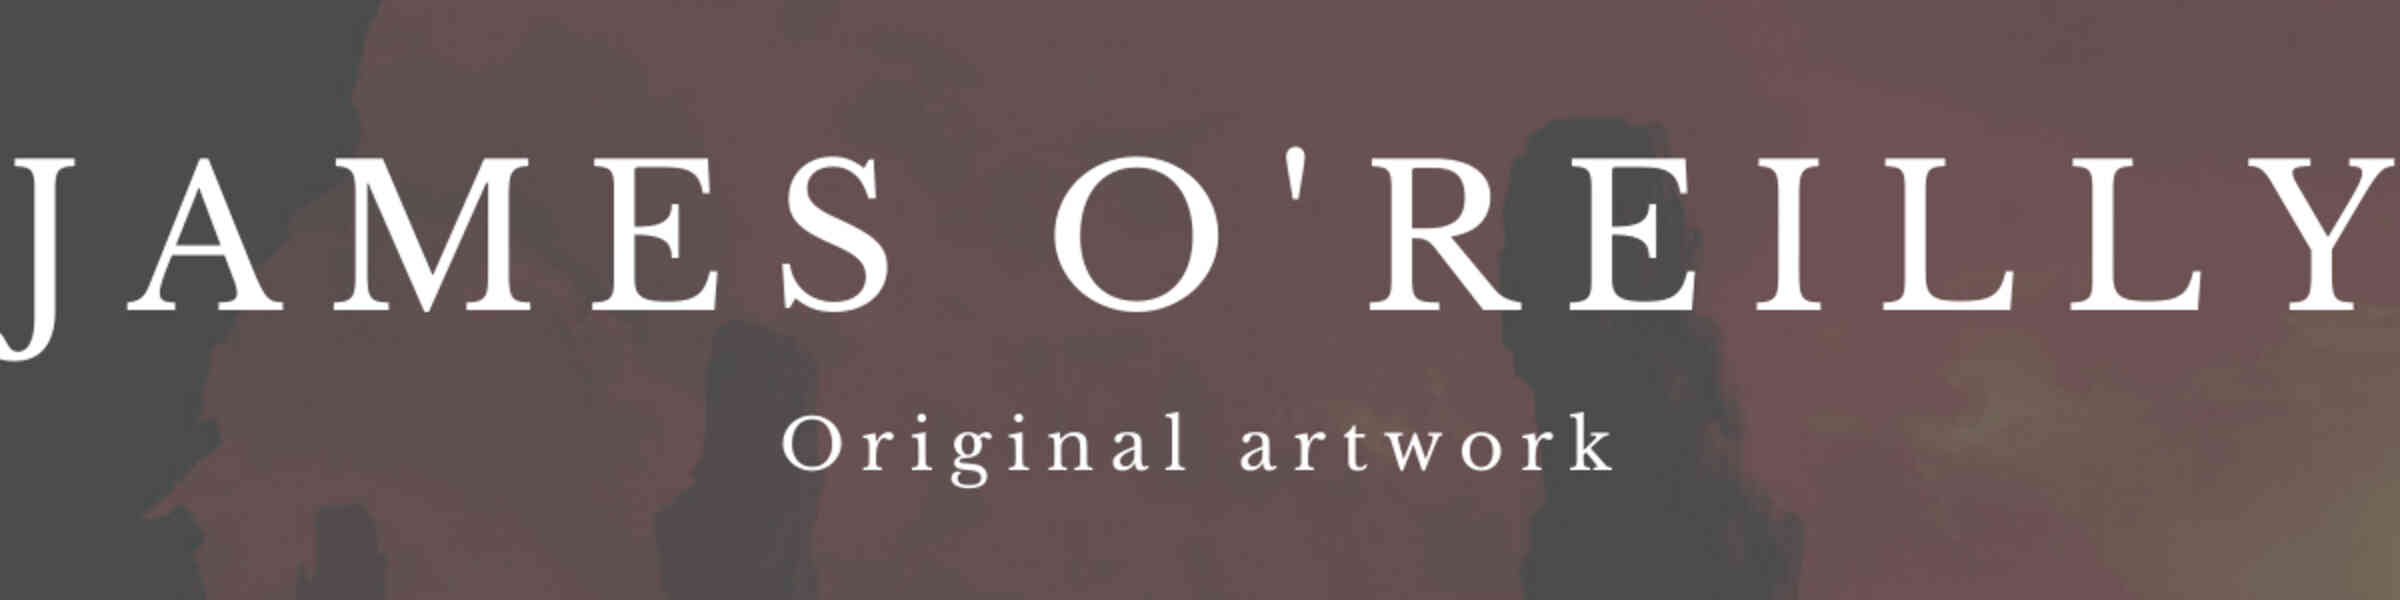 Artist shop banner image